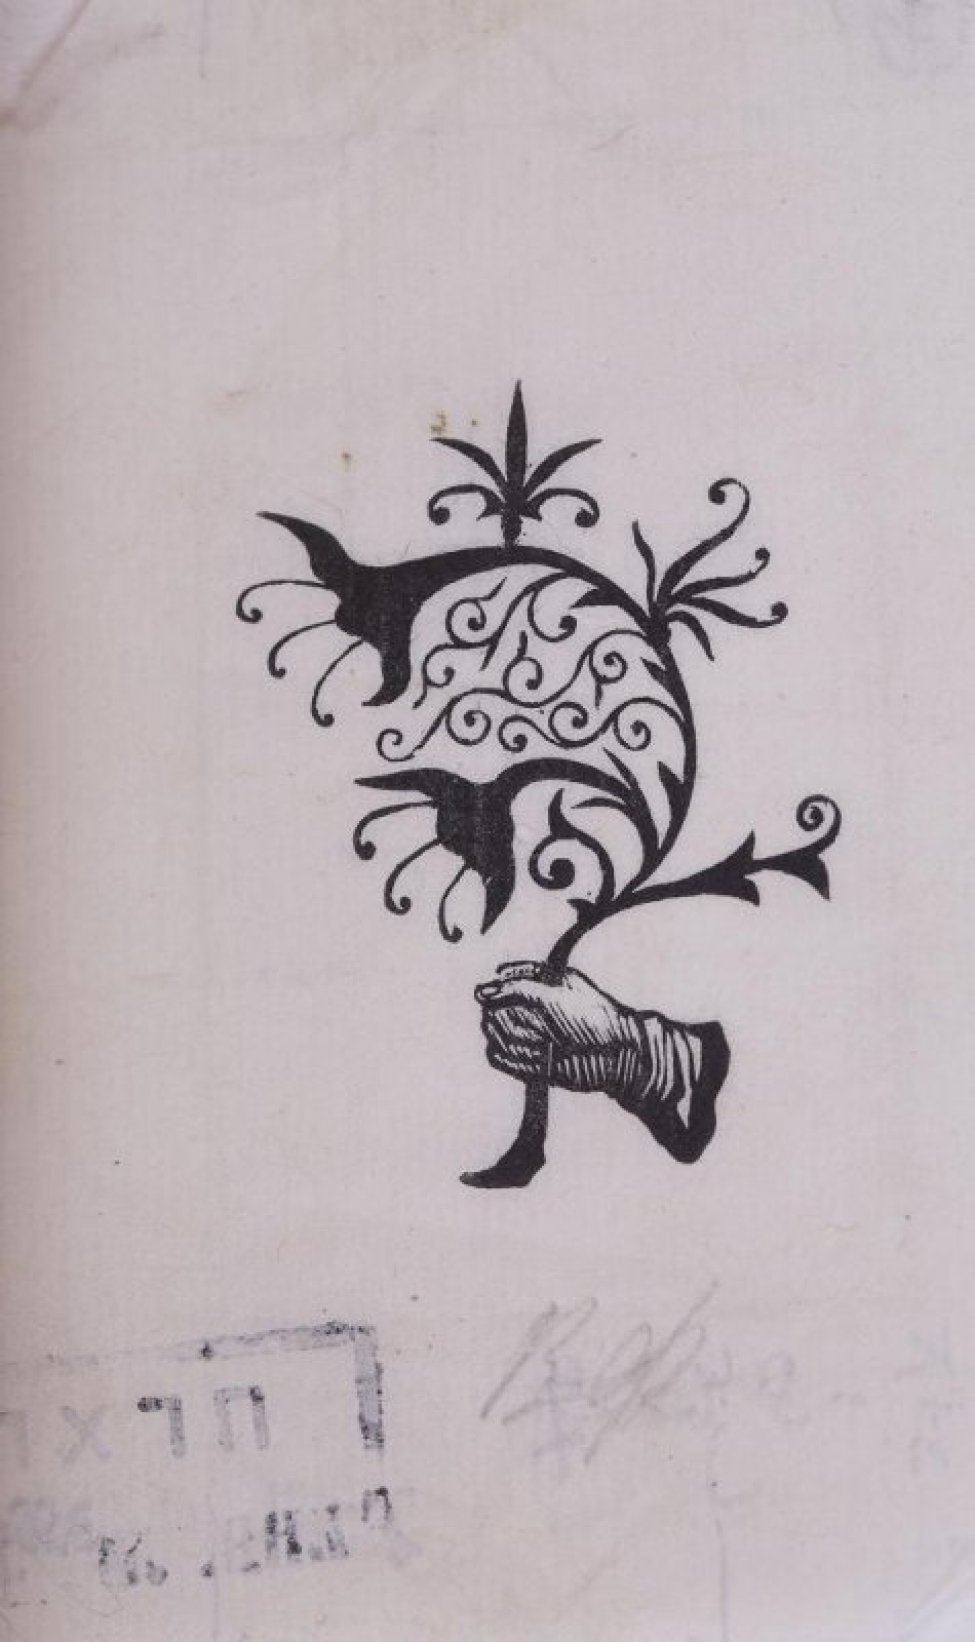 Изображена кисть человеческой руки, обращенная в левую сторону. Держит причудливую ветку с пятью черными цветами и мелкими спиралеобразными листолчками.